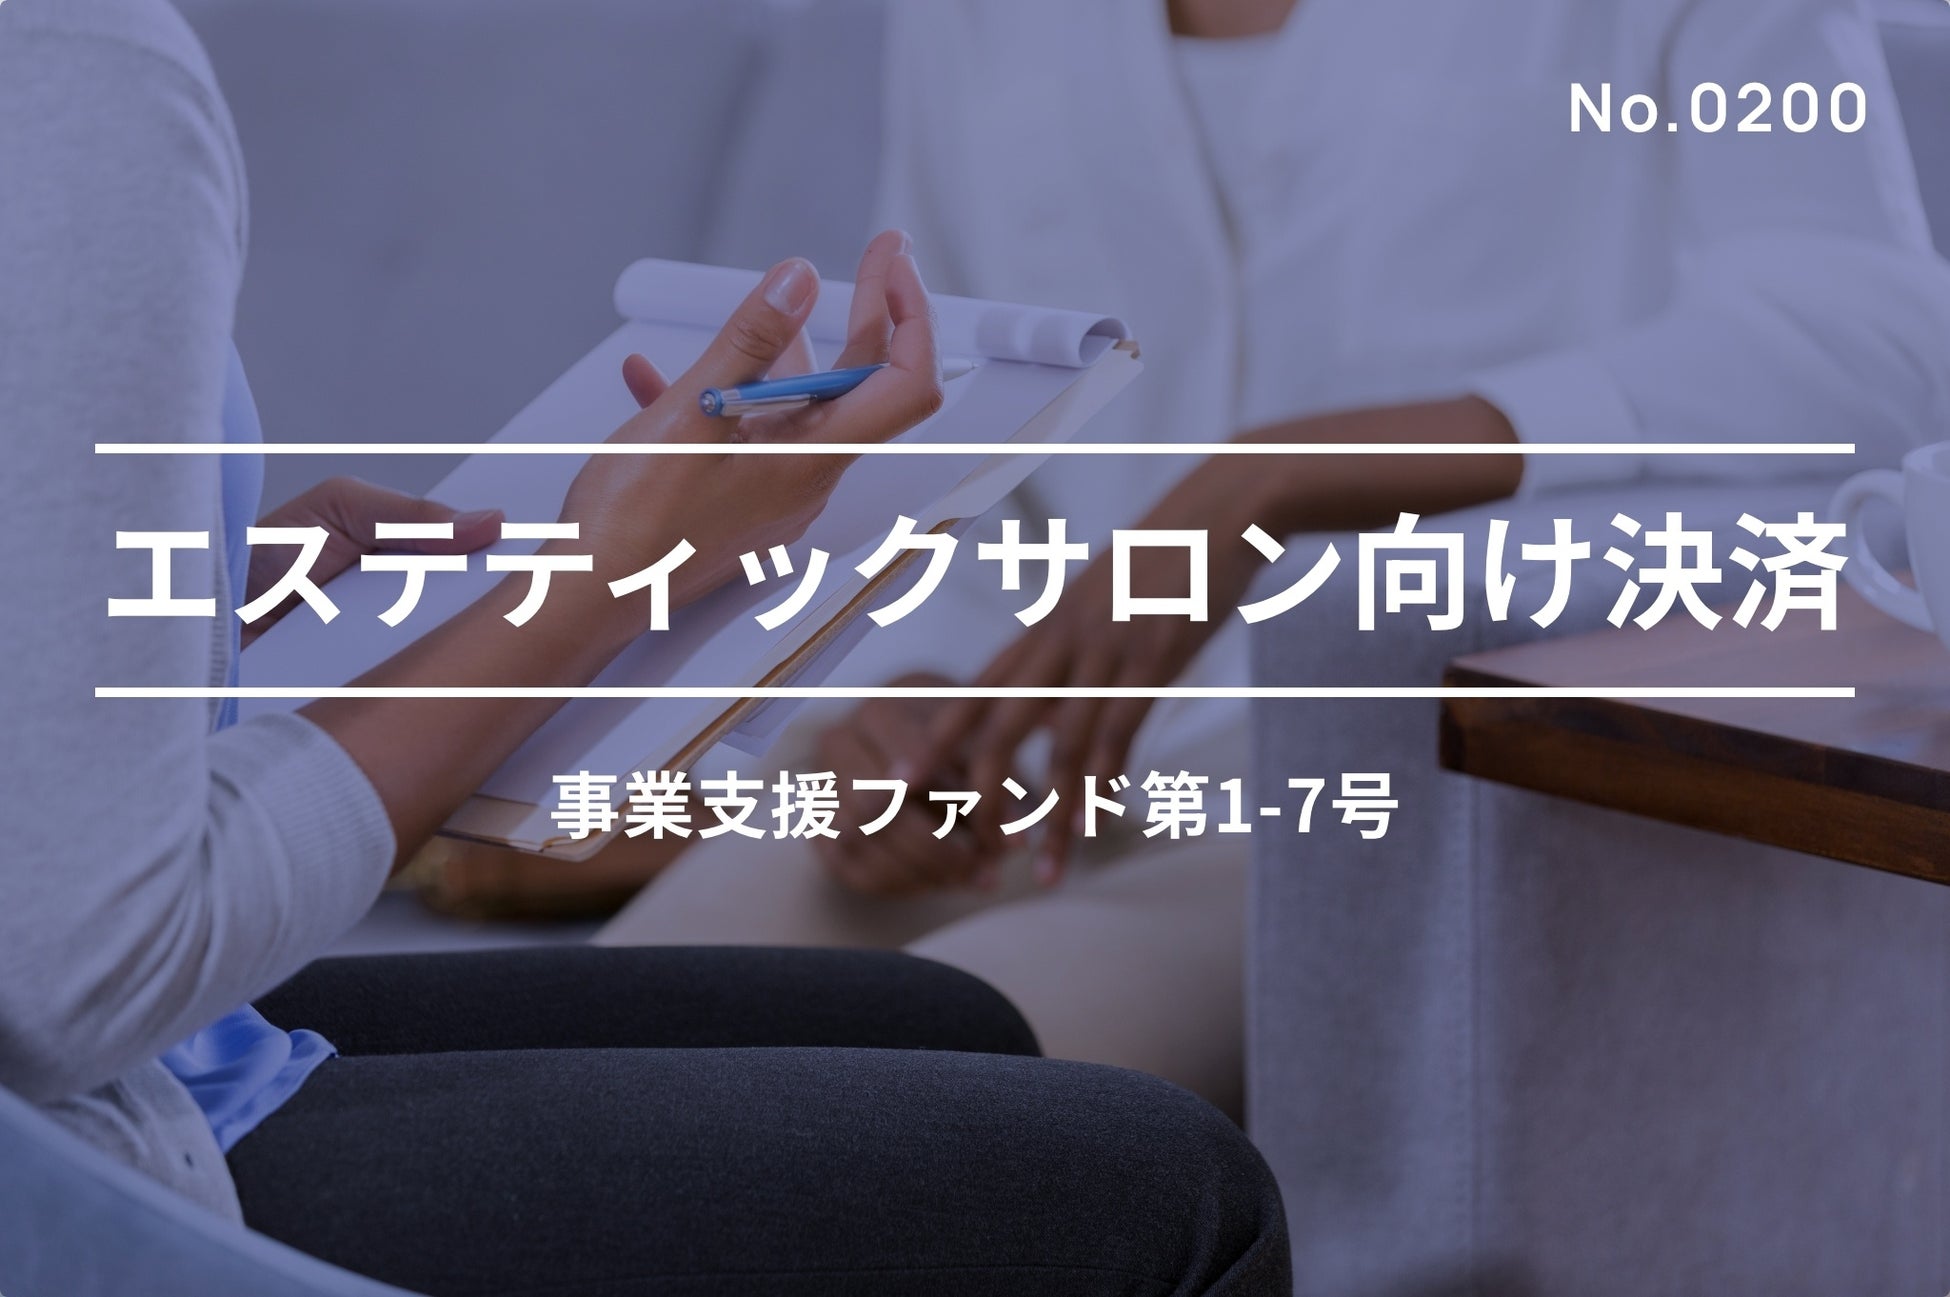 Binance Japan、日本国内におけるサービスを本日より提供開始